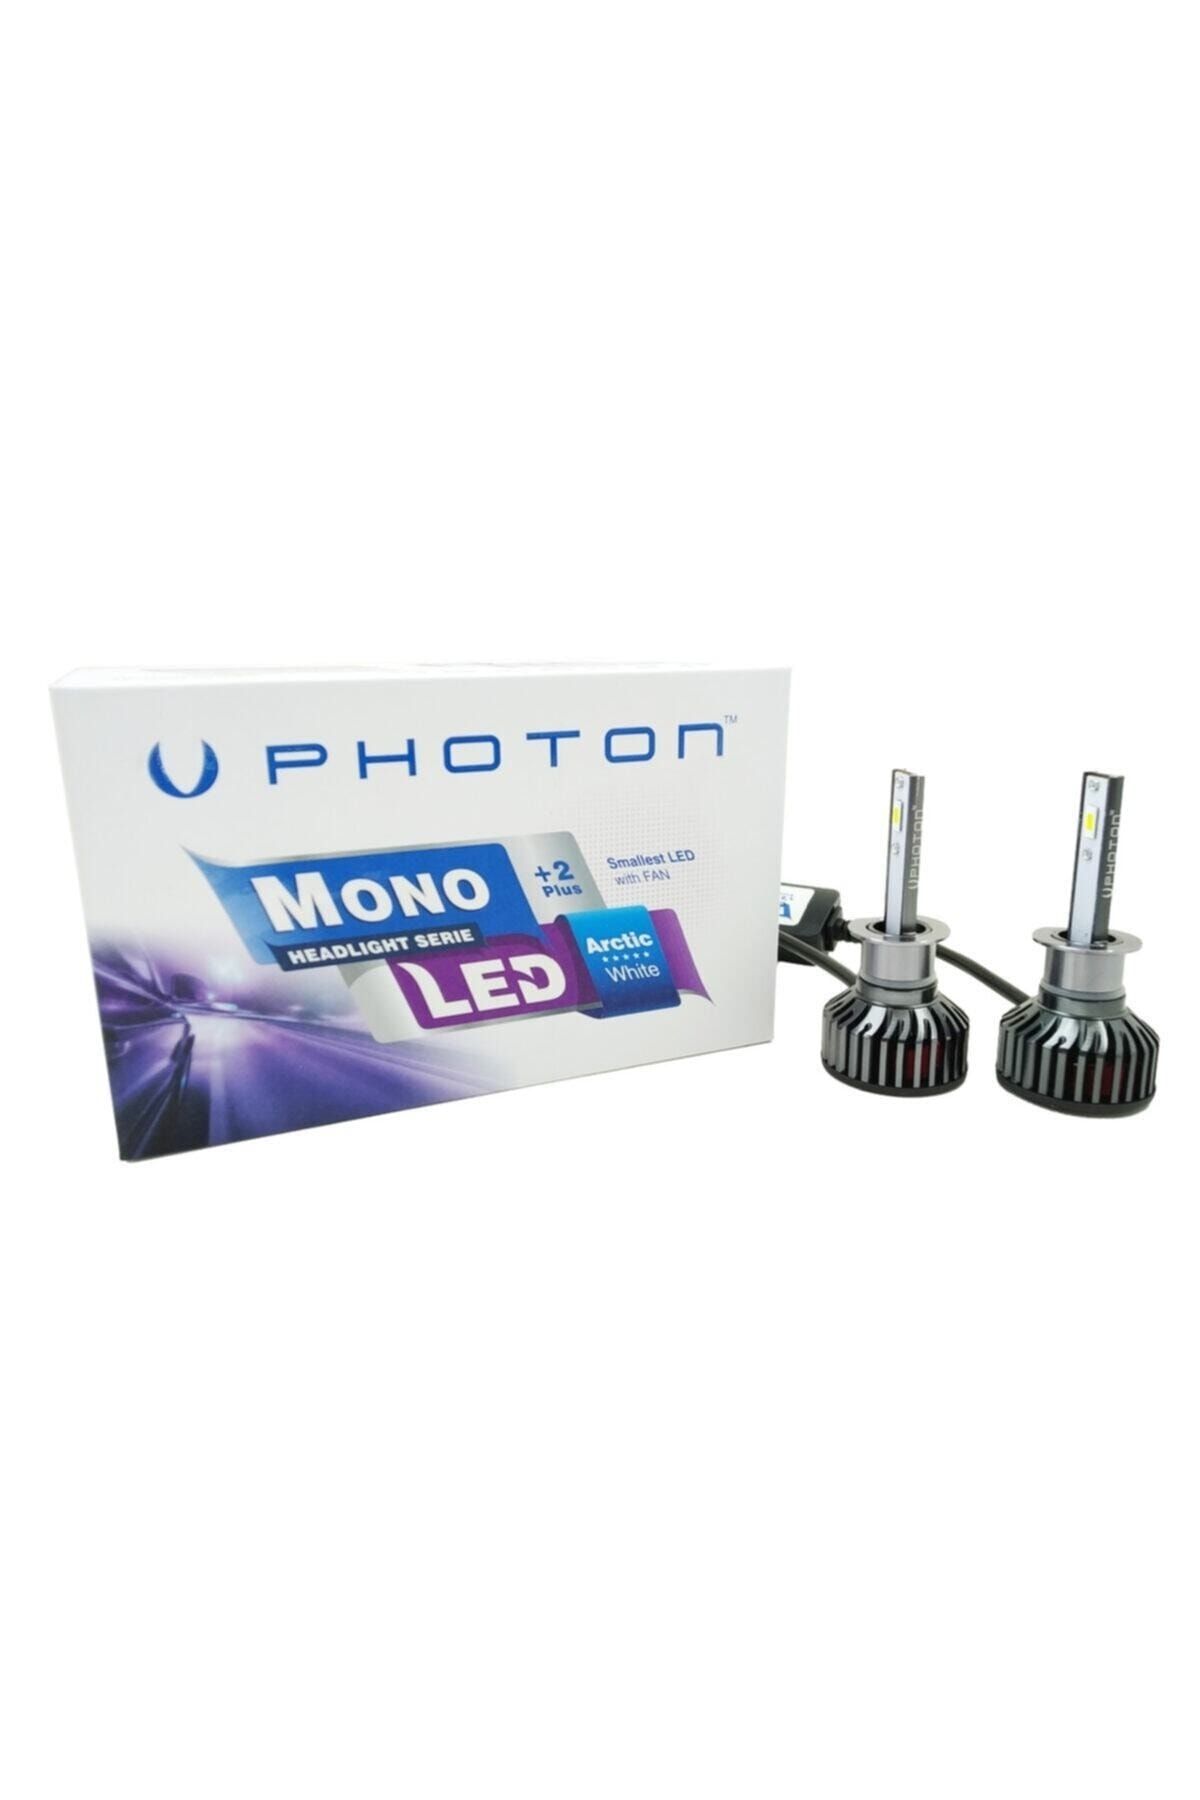 Photon Mono Serisi 2 Plus Led Xenon H1